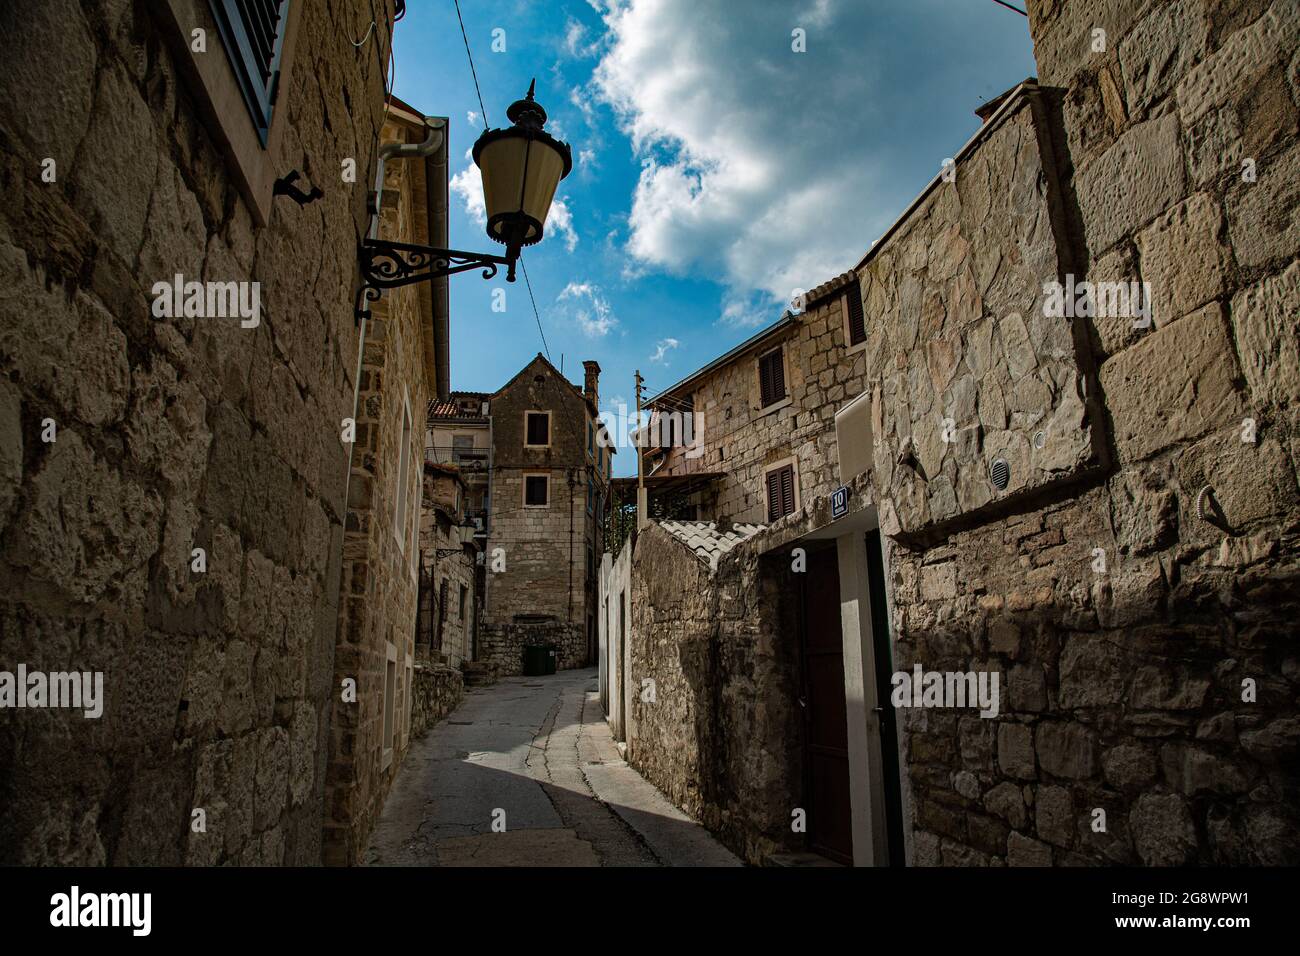 Ciudad fundada por Diocleciano en Croacia a orillas del mar adriatico, con casco antiguo de calles estrechas con arquitectura muy característica Stock Photo